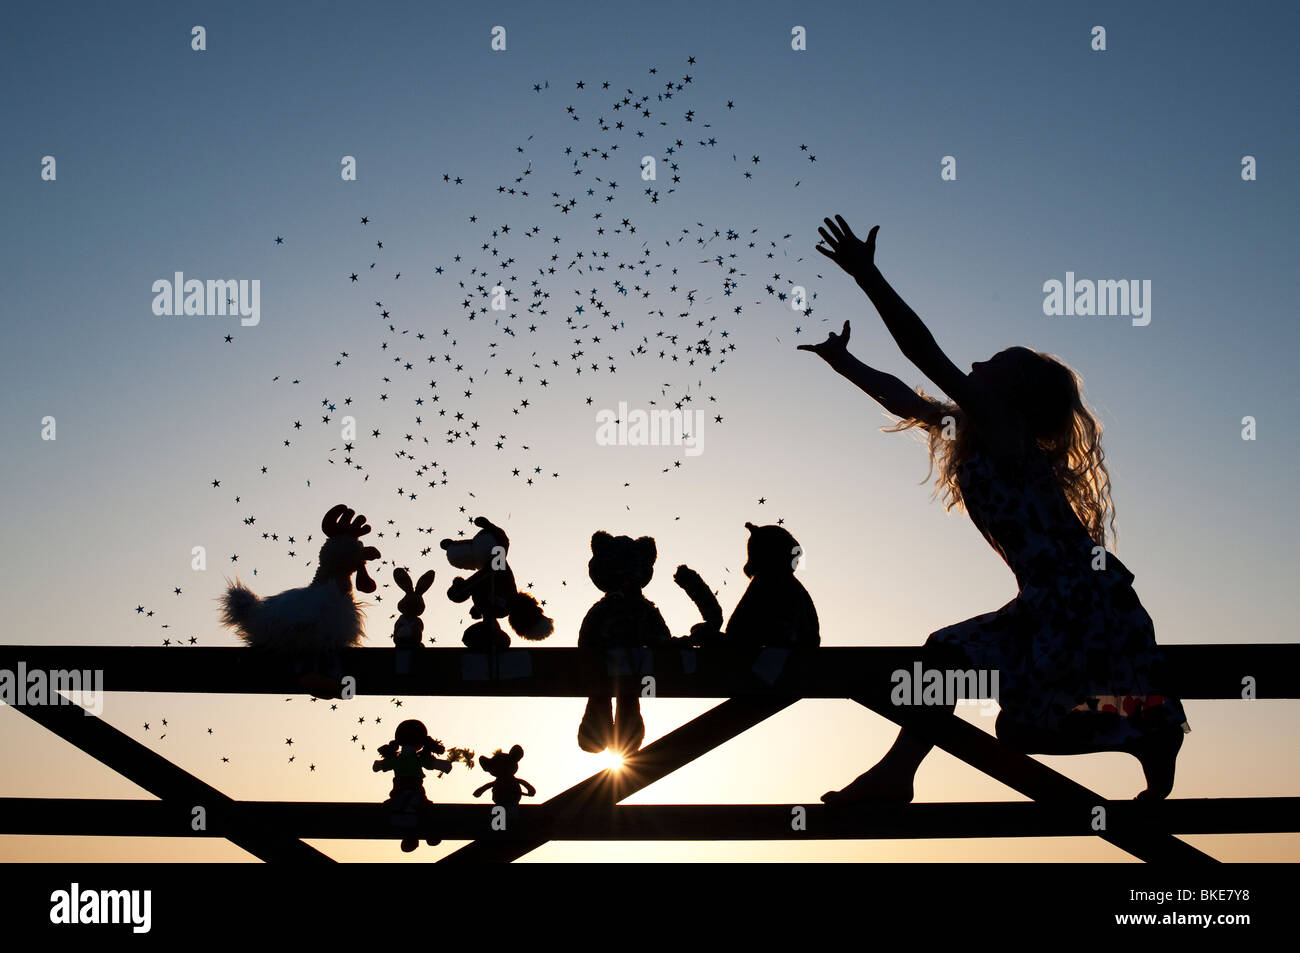 Fille projetant des étoiles sur une poupée de chiffon, le poulet, le renard, le lapin, le chat et les ours en peluche peluches assis sur une barrière au coucher du soleil. Silhouette Banque D'Images